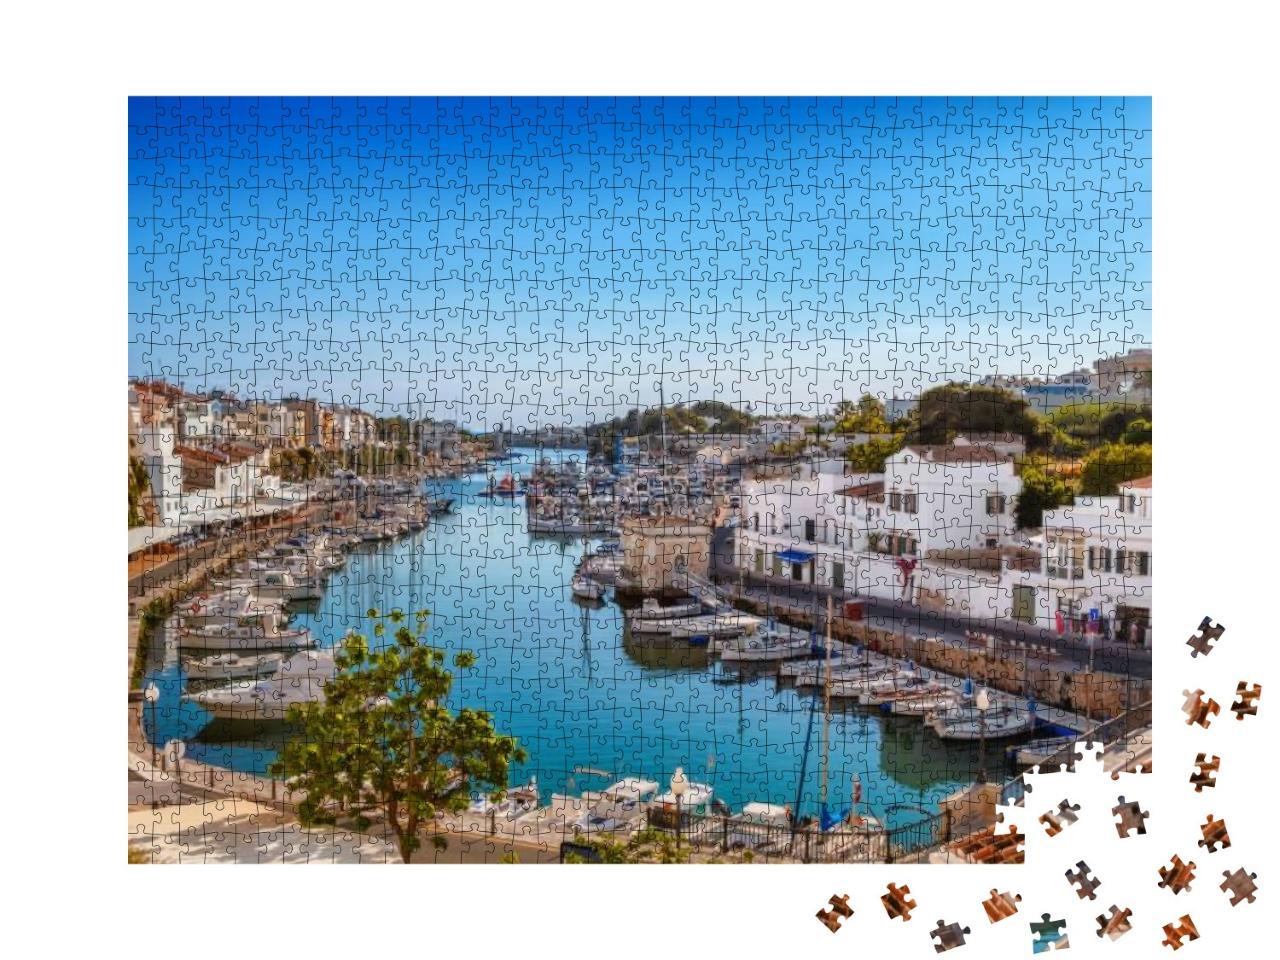 Puzzle 1000 Teile „Altstadt von Ciutadella auf Menorca, Spanien“